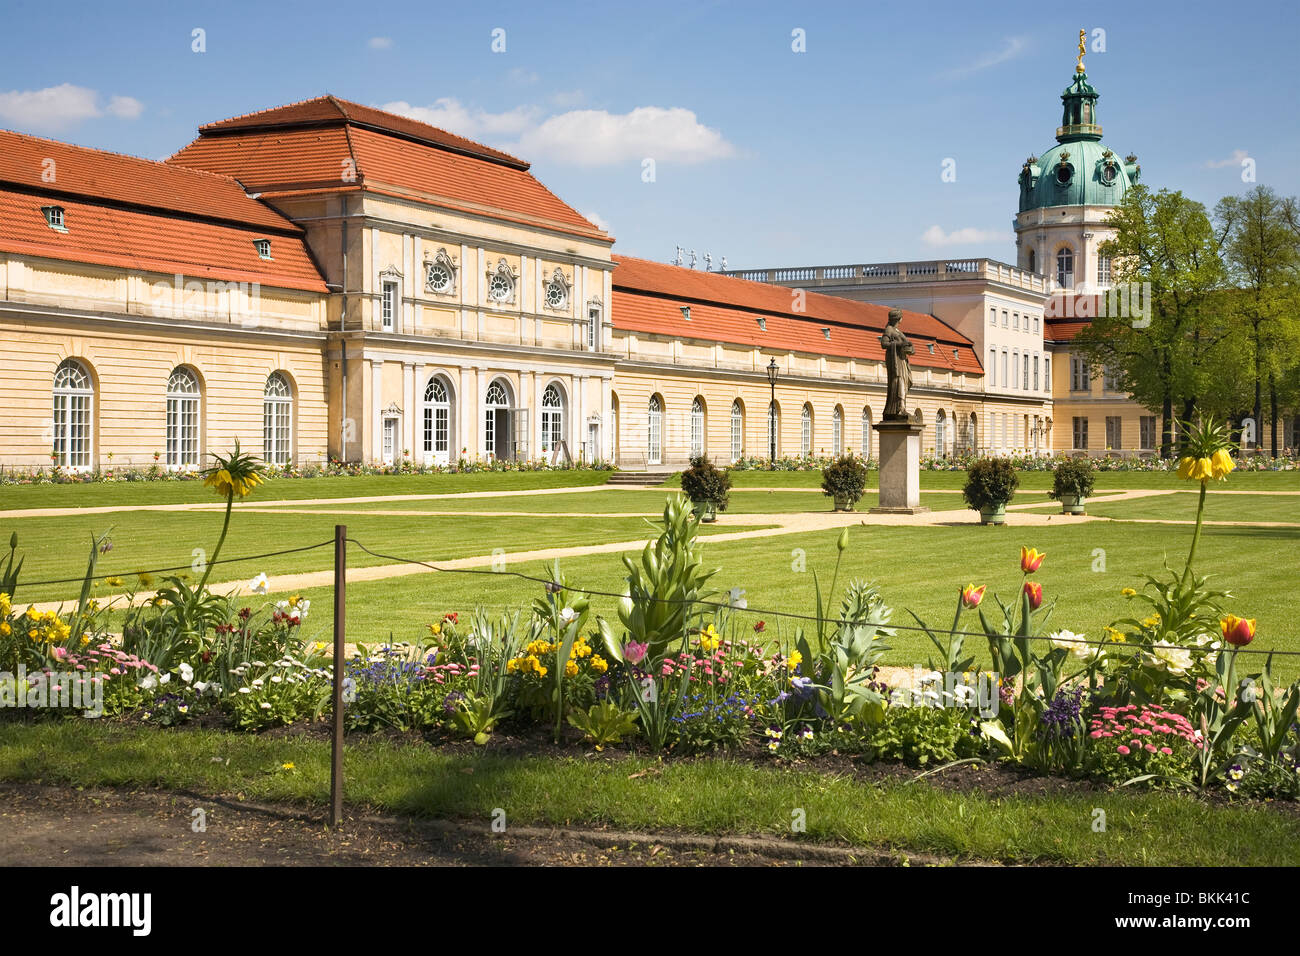 Schloss Charlottenburg, Berlin, Germany - Große Orangerie Stock Photo